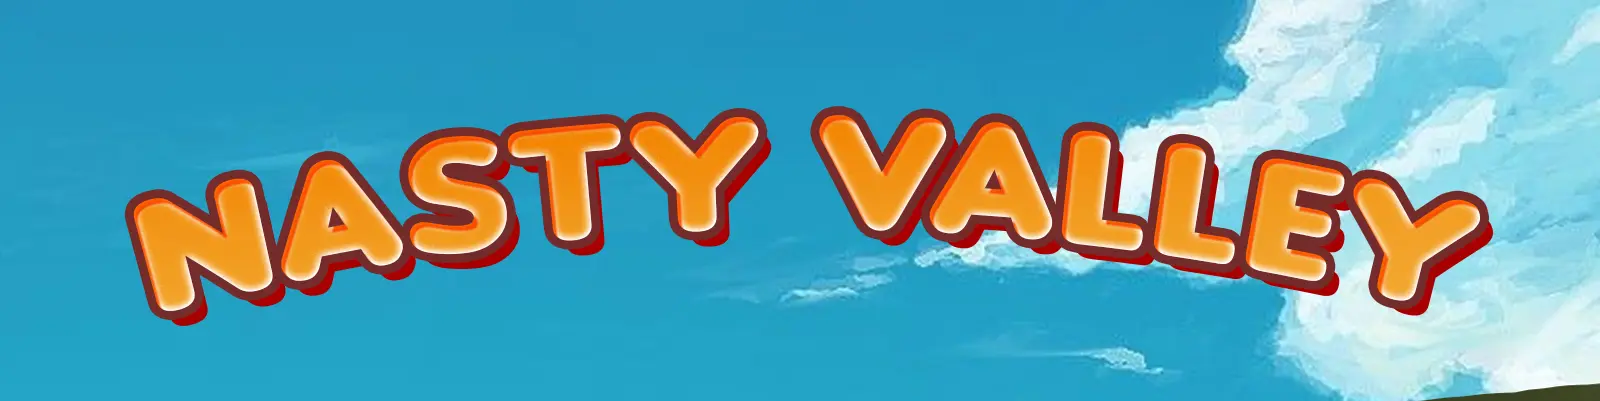 Nasty Valley [v0.1] main image